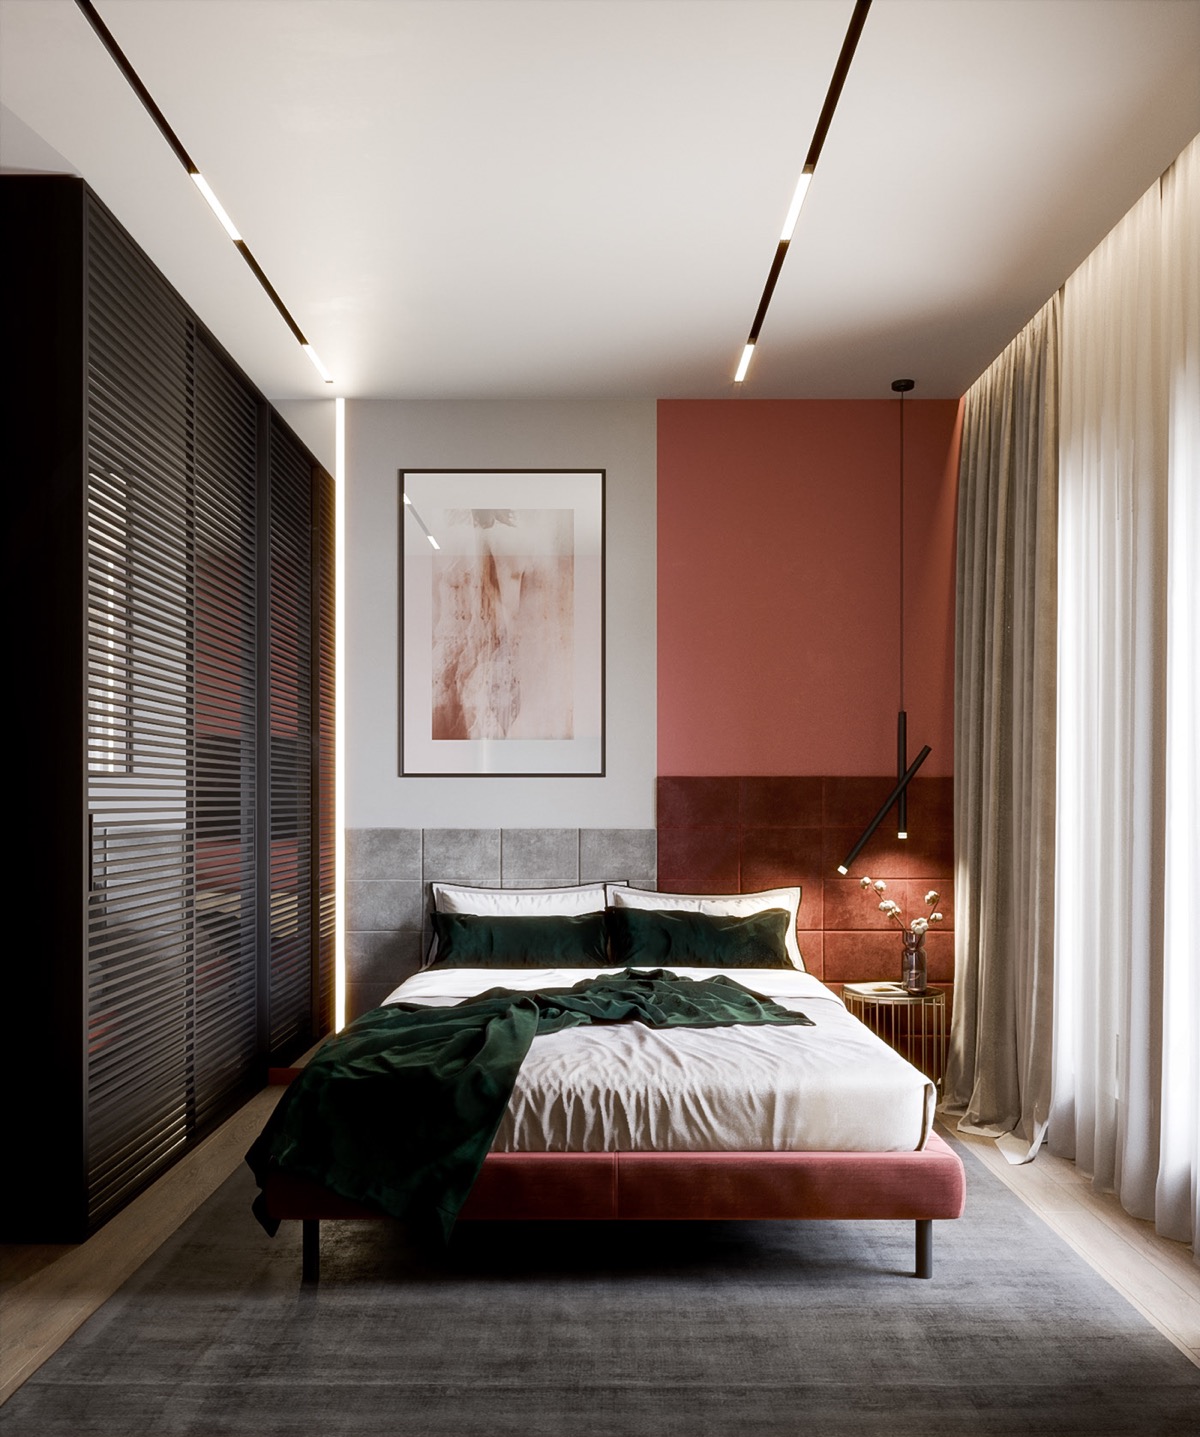 hình ảnh phòng ngủ ấn tượng với tường đầu giường một nửa sơn trắng, một nửa sơn đỏ độc đáo